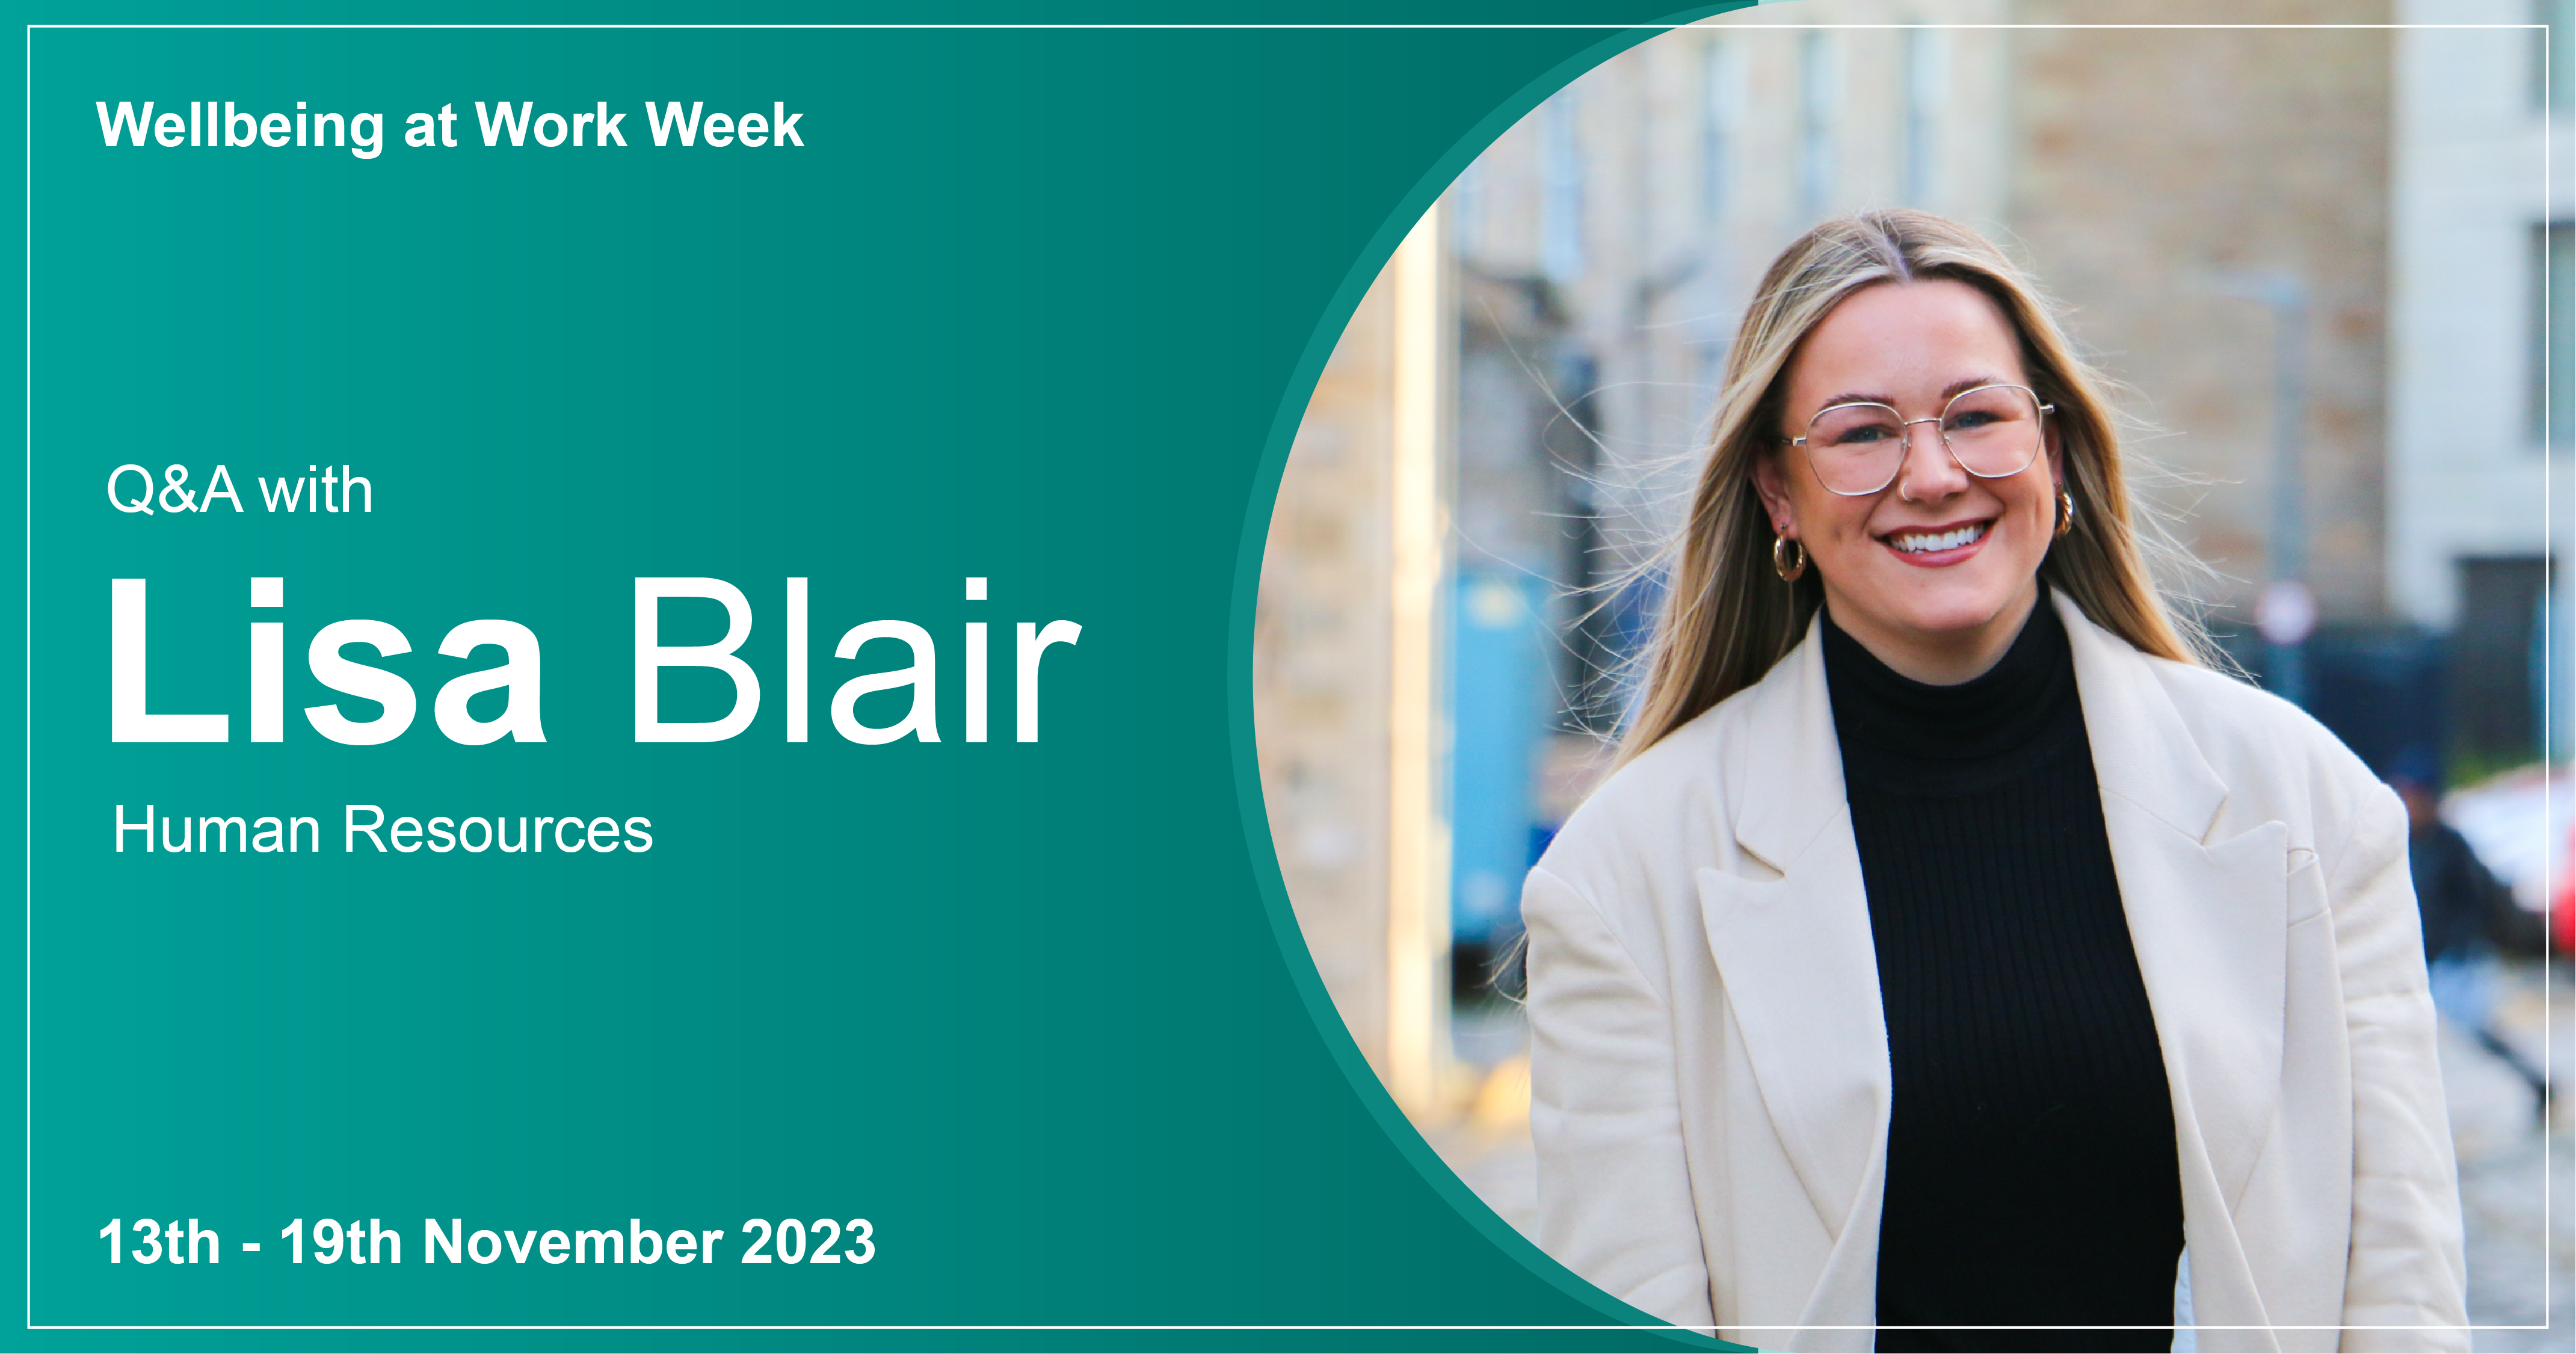 Wellbeing at Work Week 2023: Lisa Blair, Human Resources